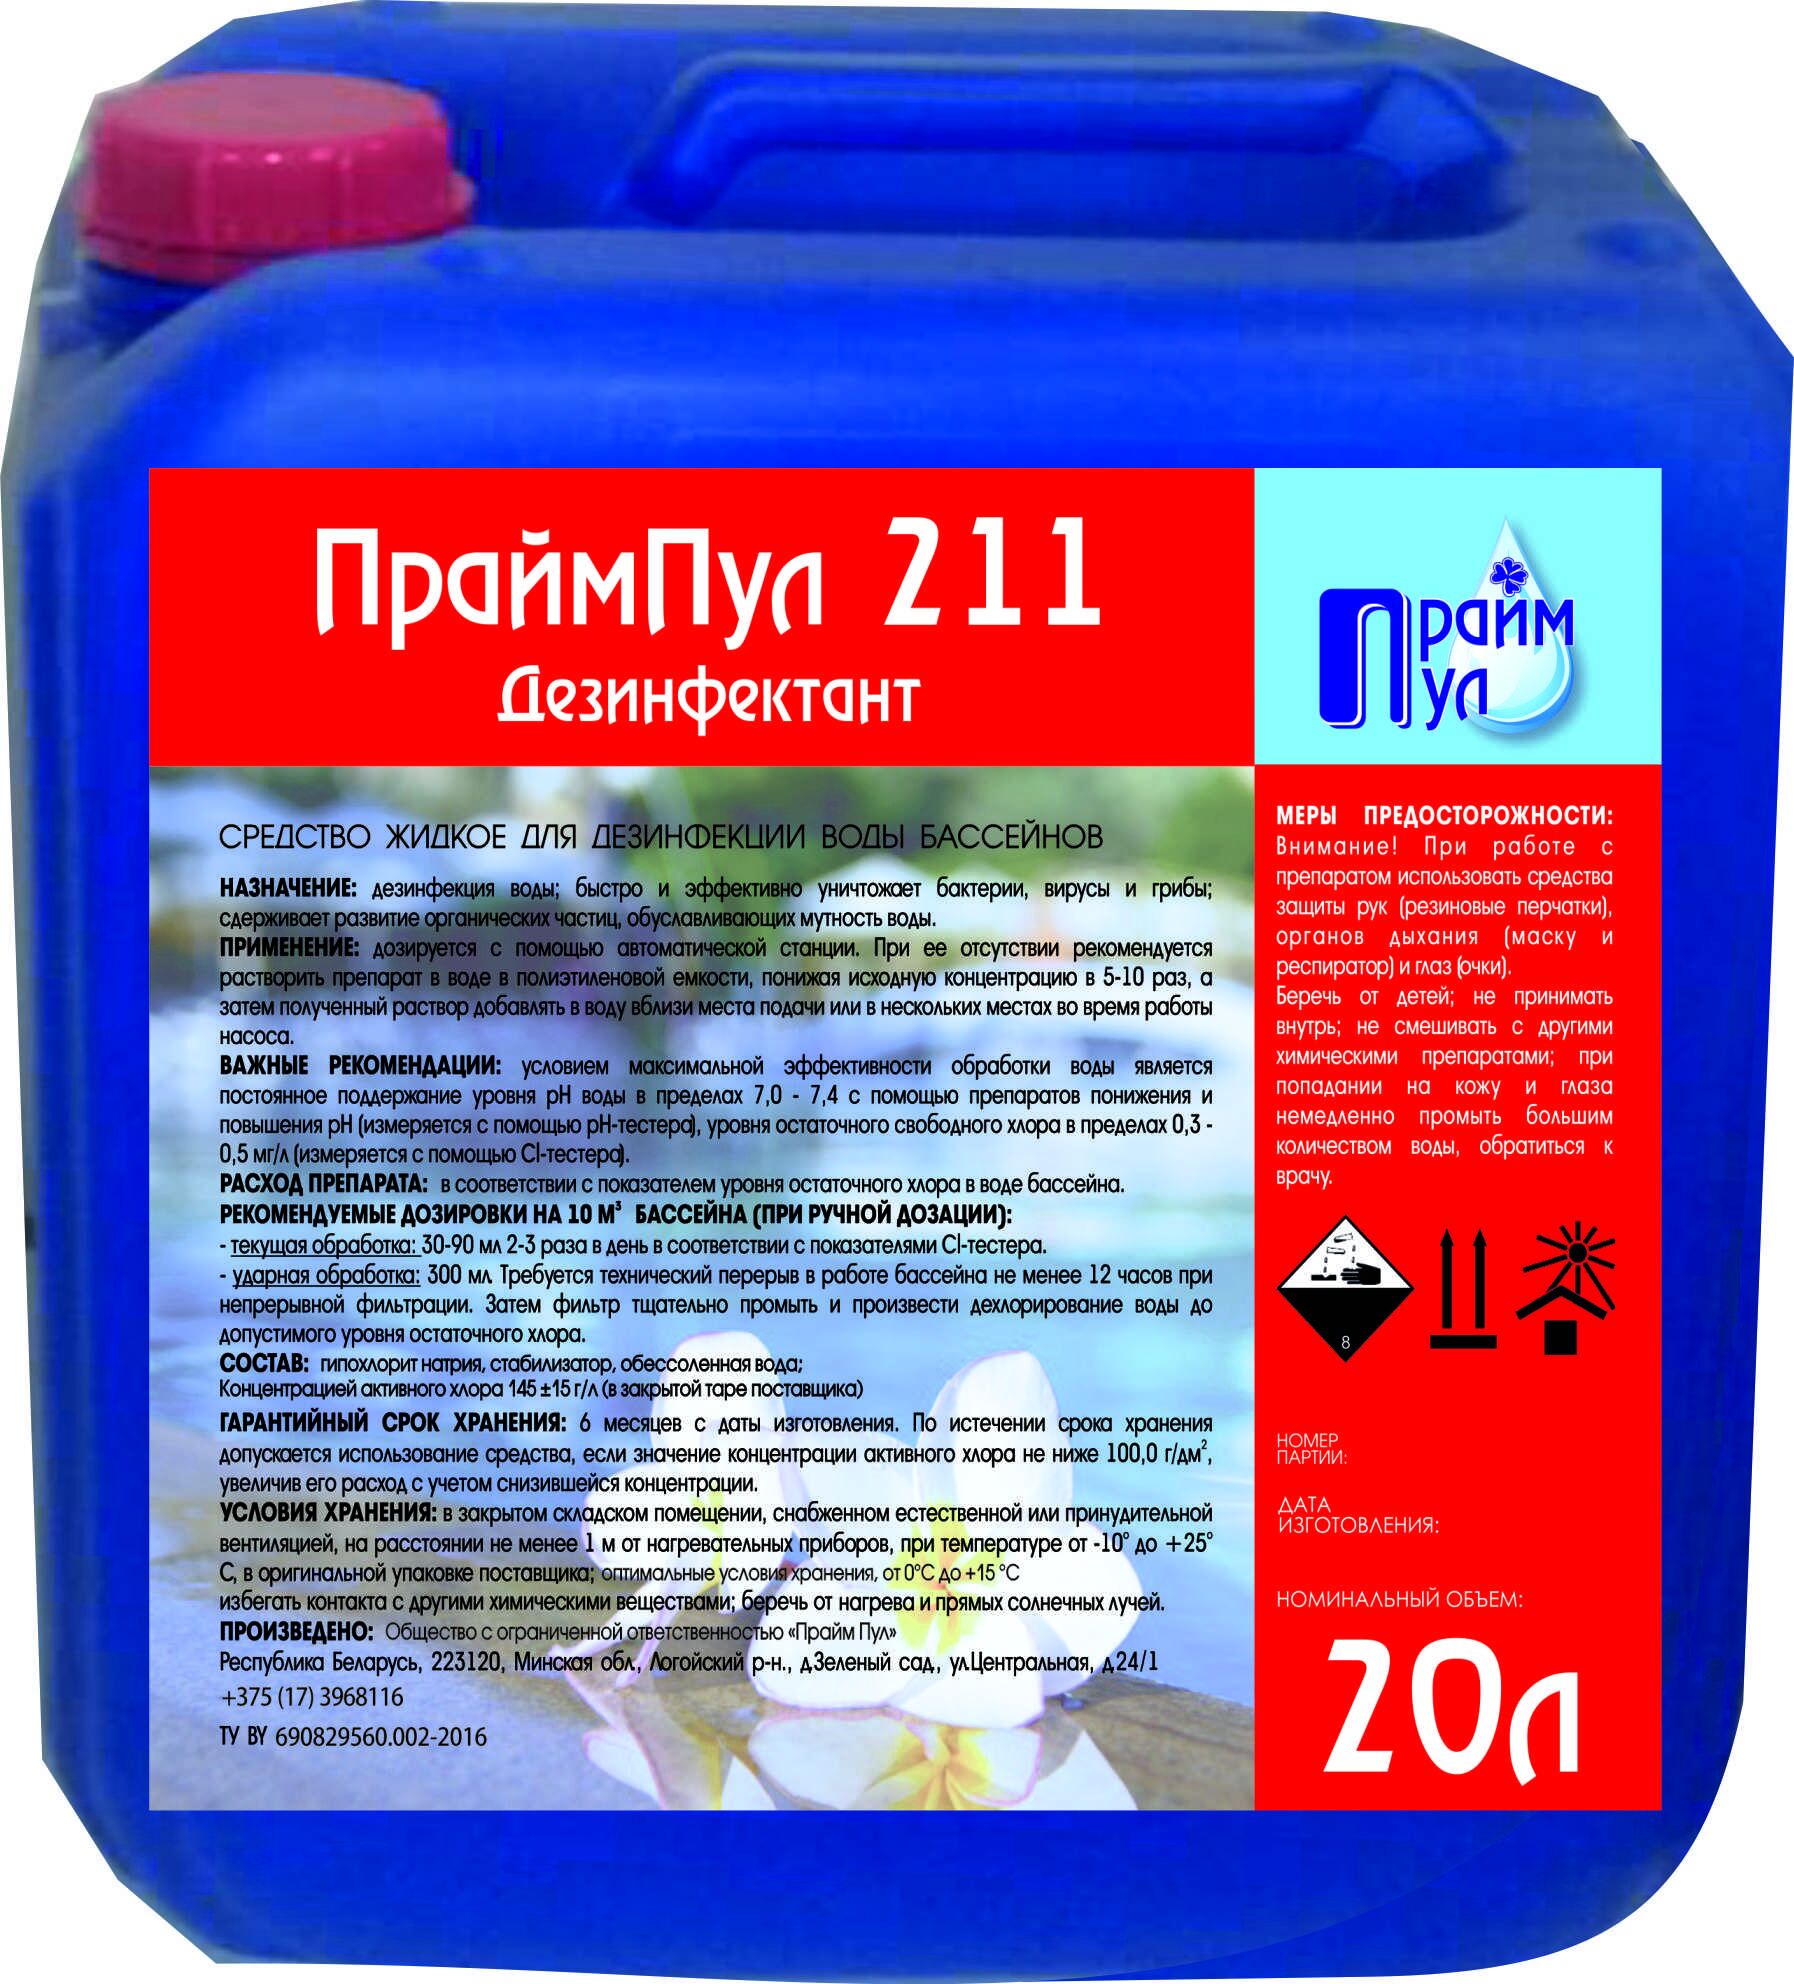 Средство жидкое дезинфицирующее для бассейнов «ПраймПул Дезинфекат 211» 30 литров